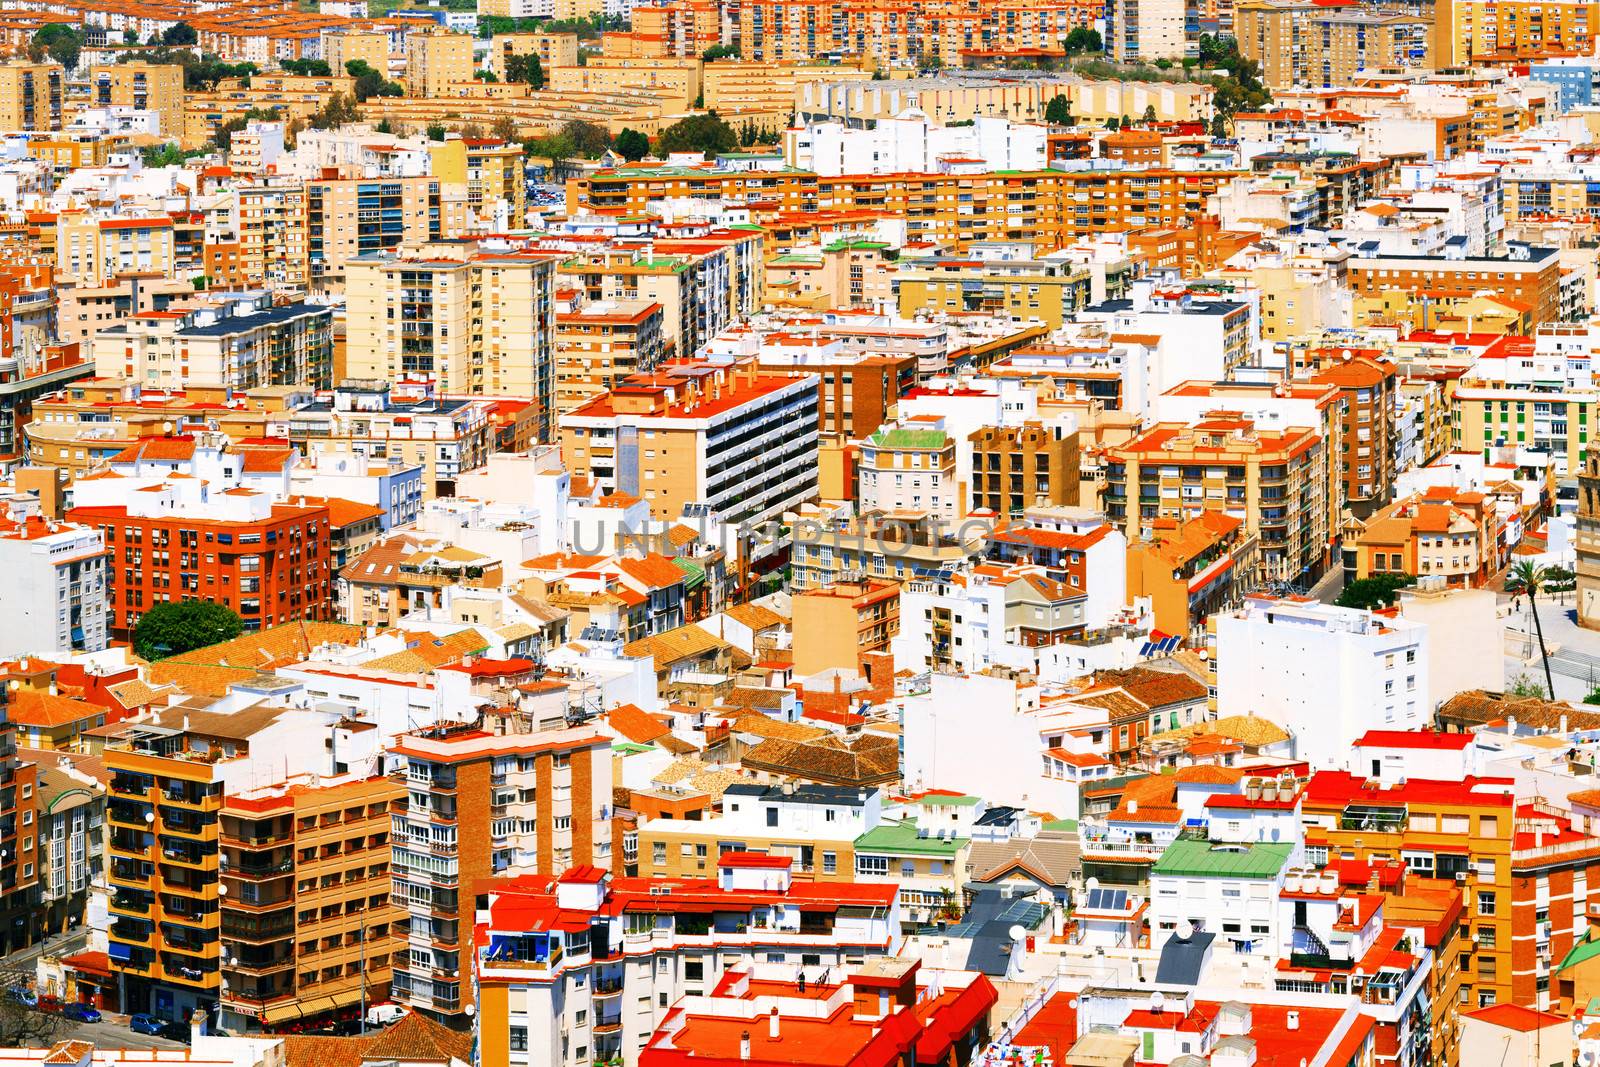 Malaga, Spain by Nobilior